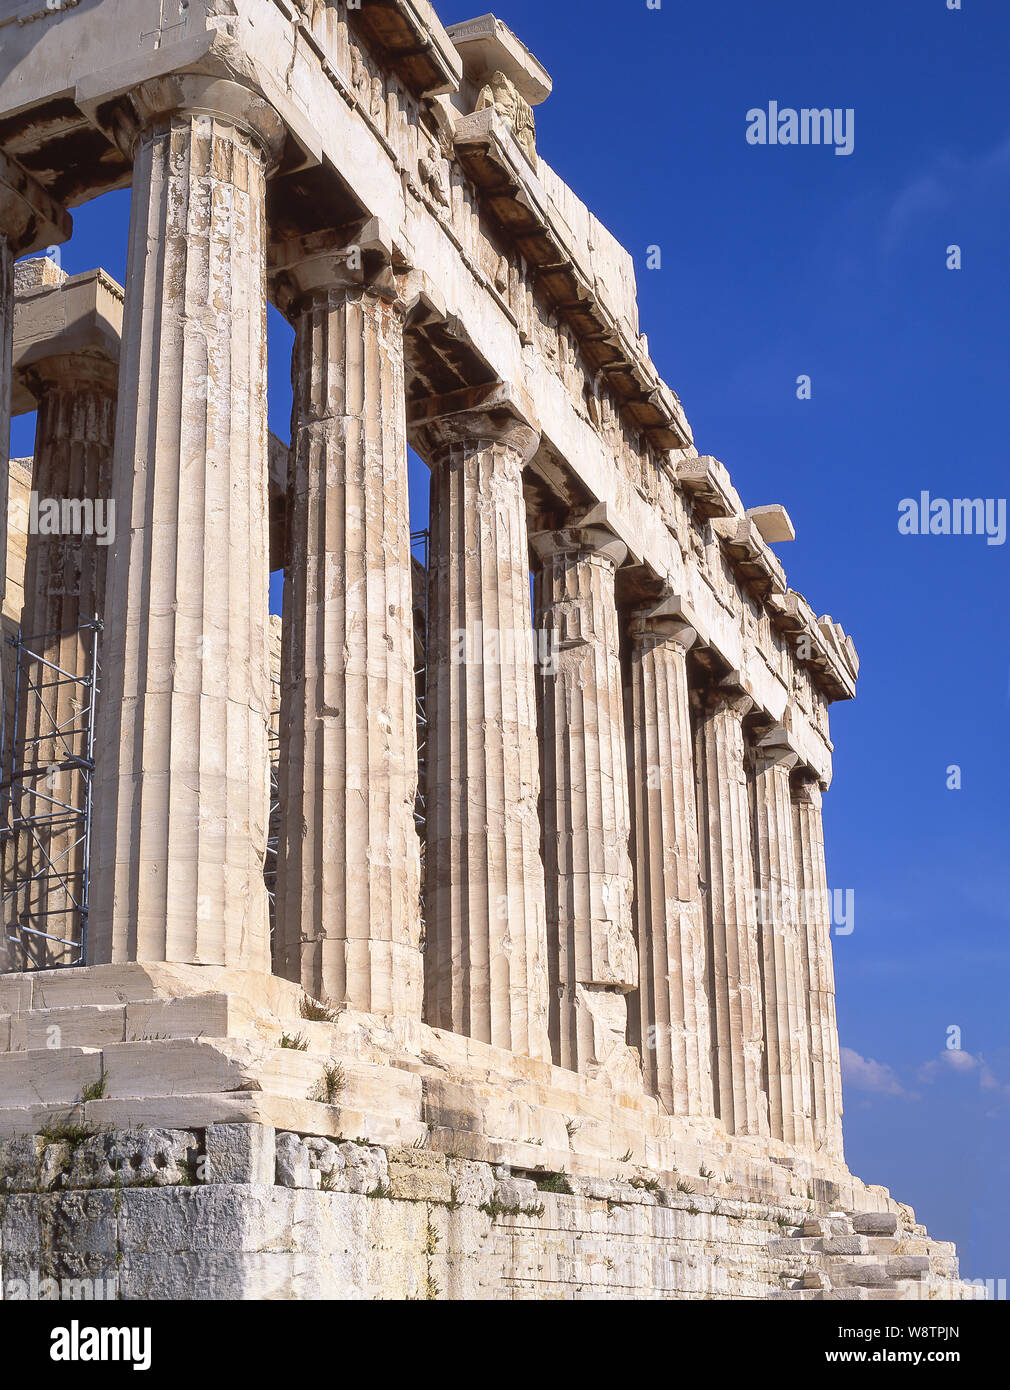 Columns of the The Parthenon, Acropolis of Athens, Athens (Athina), Central Athens, Greece Stock Photo